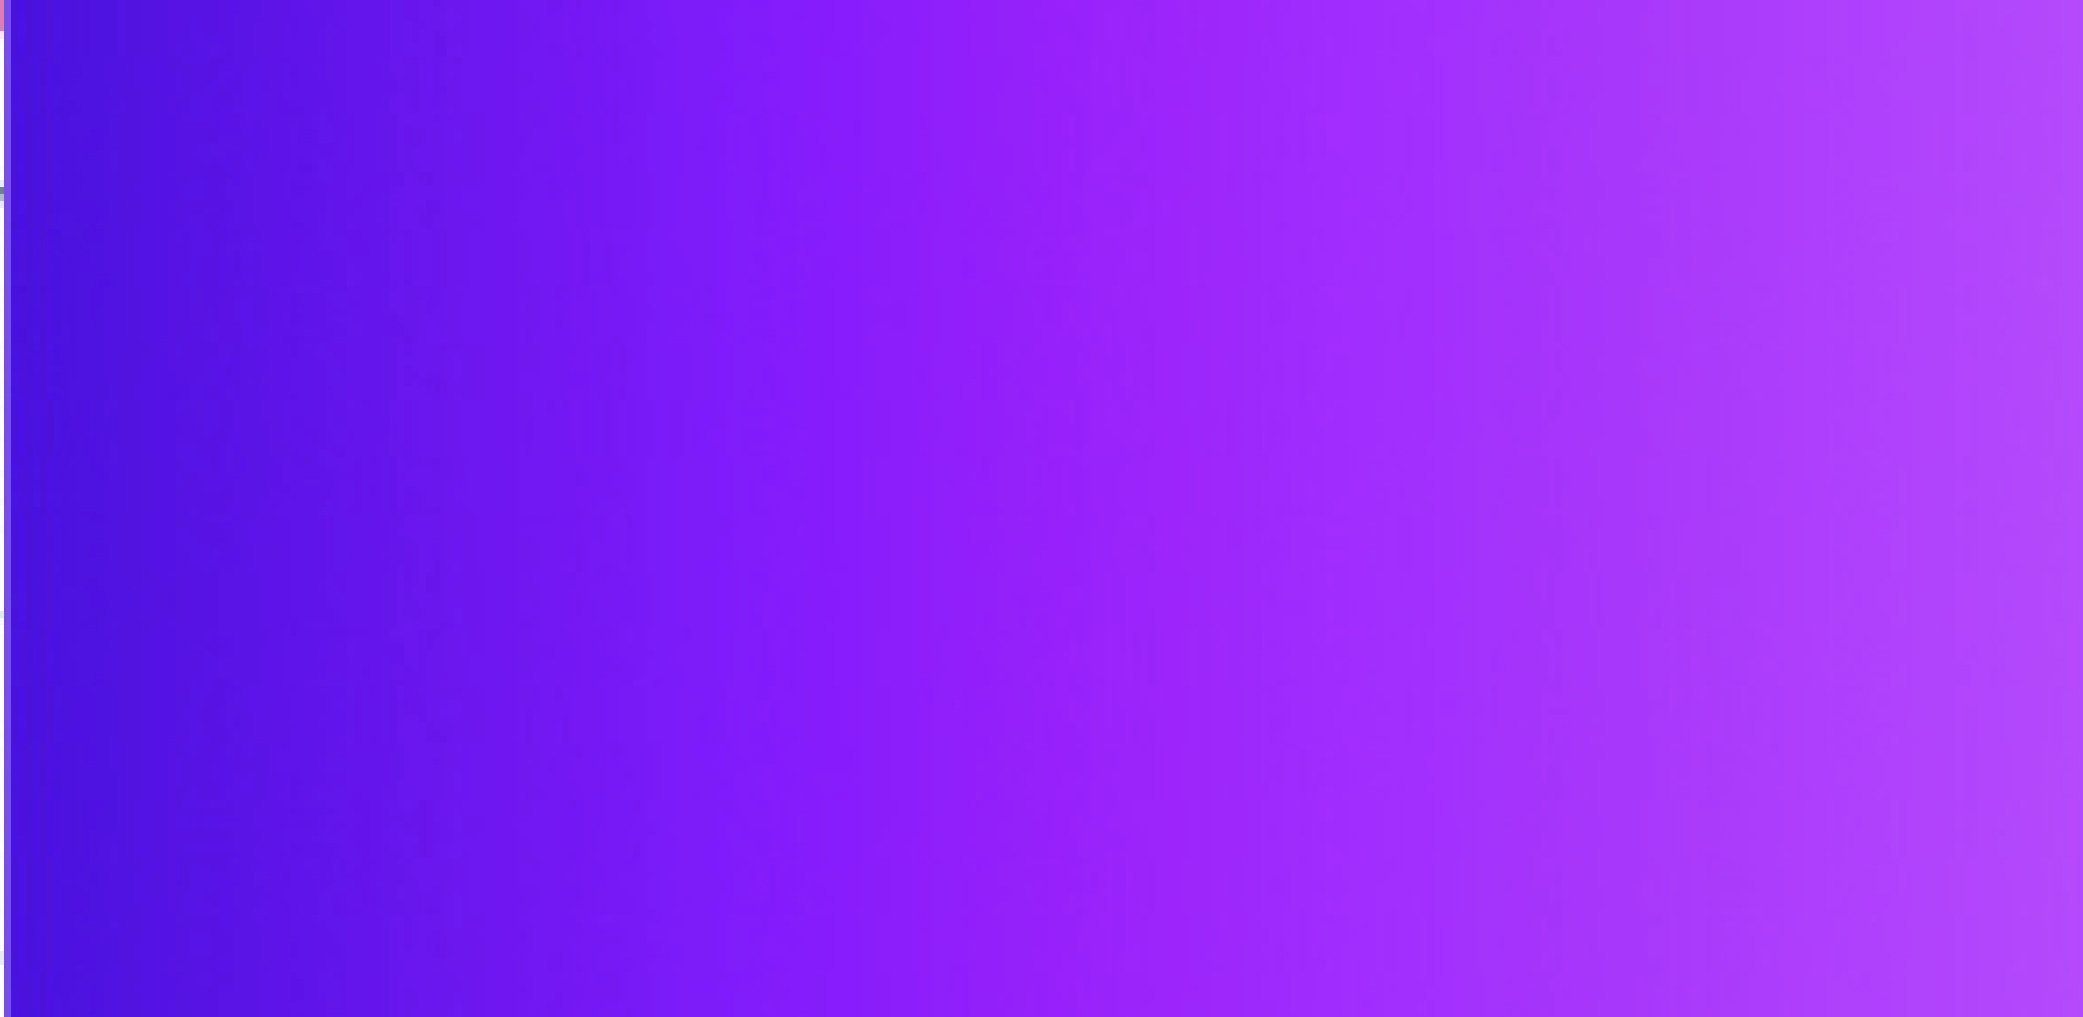 Фиолетовый фон. Фиолетовый фон однотонный. Фиолетовый цвет однотонный неоновый. Сиреневый цвет фон. Фиолетовый пиксели